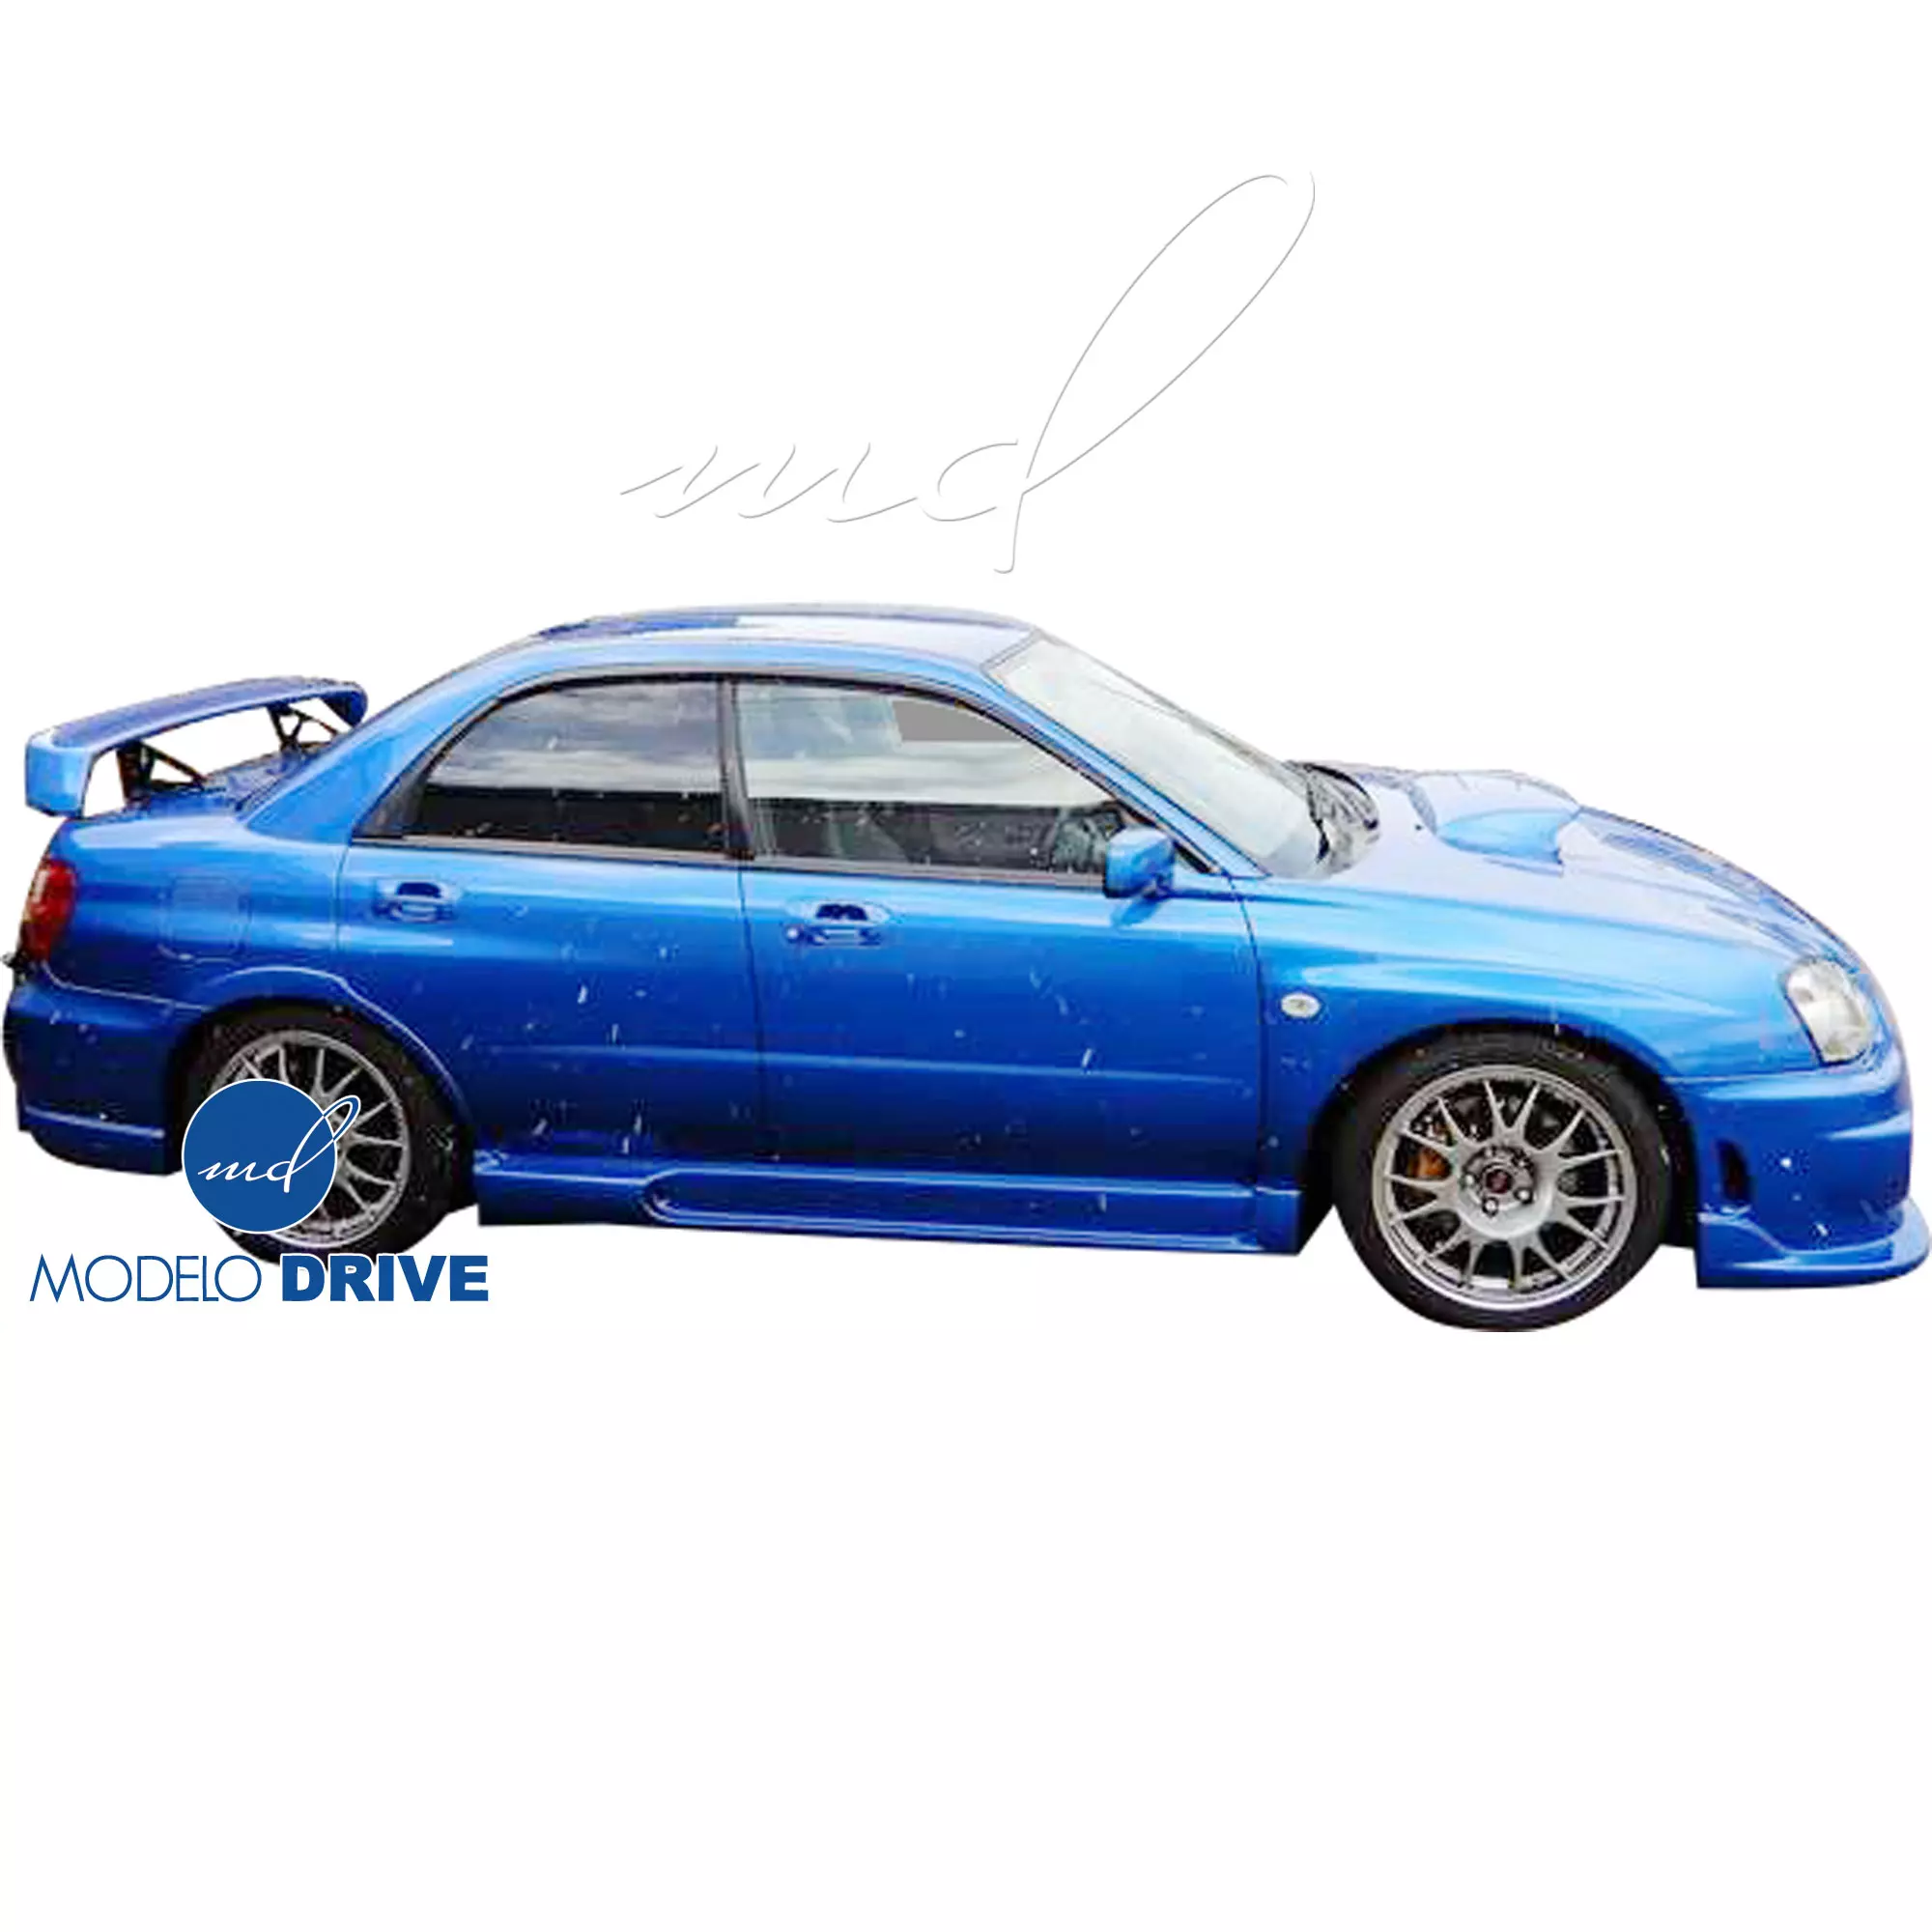 ModeloDrive FRP ING Body Kit 4pc > Subaru WRX 2006-2007 > 4dr Sedan - Image 8